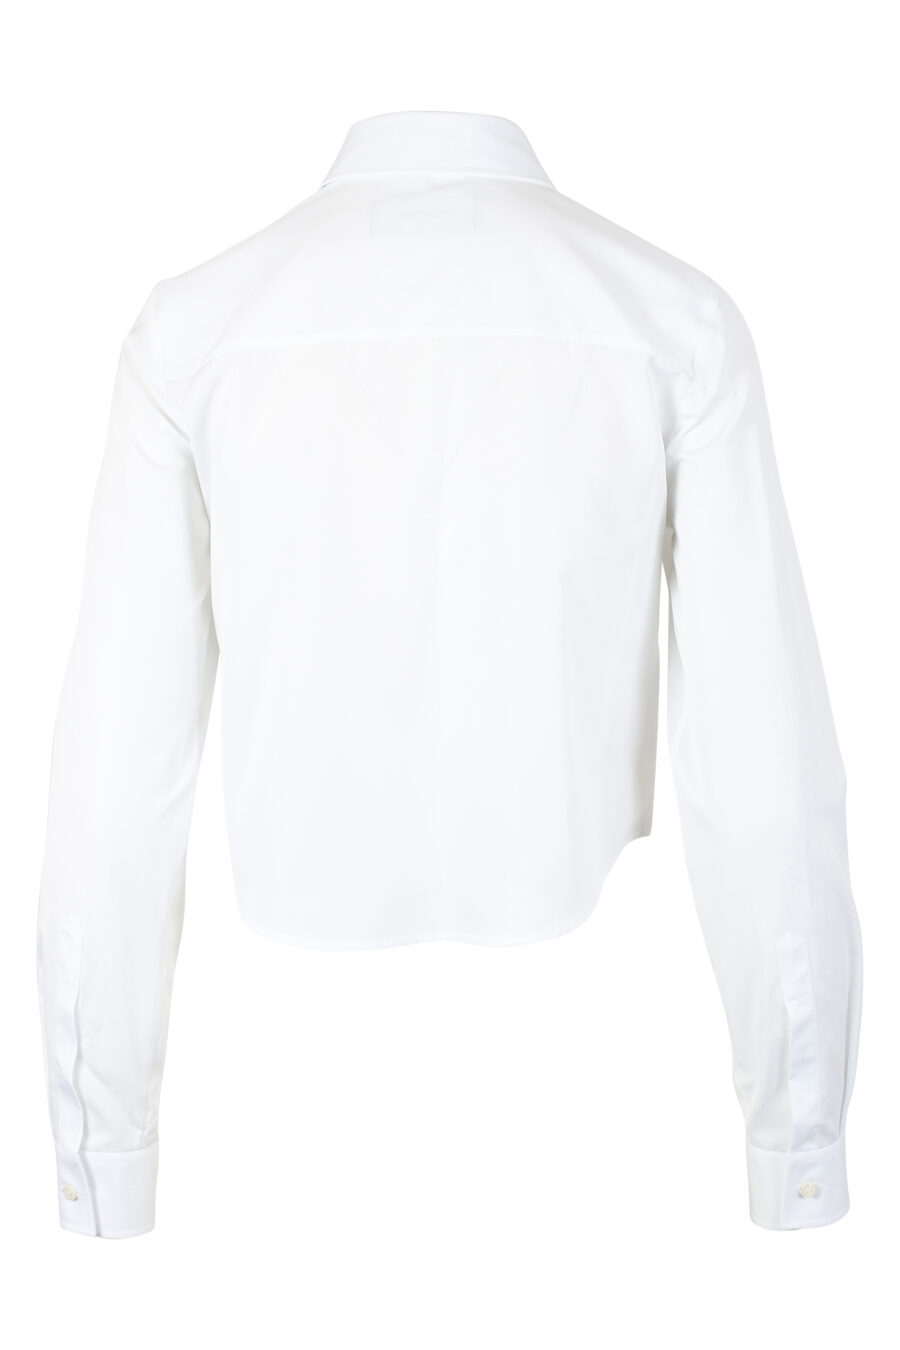 Chemise blanche courte avec mini-logo à double icône - IMG 9794